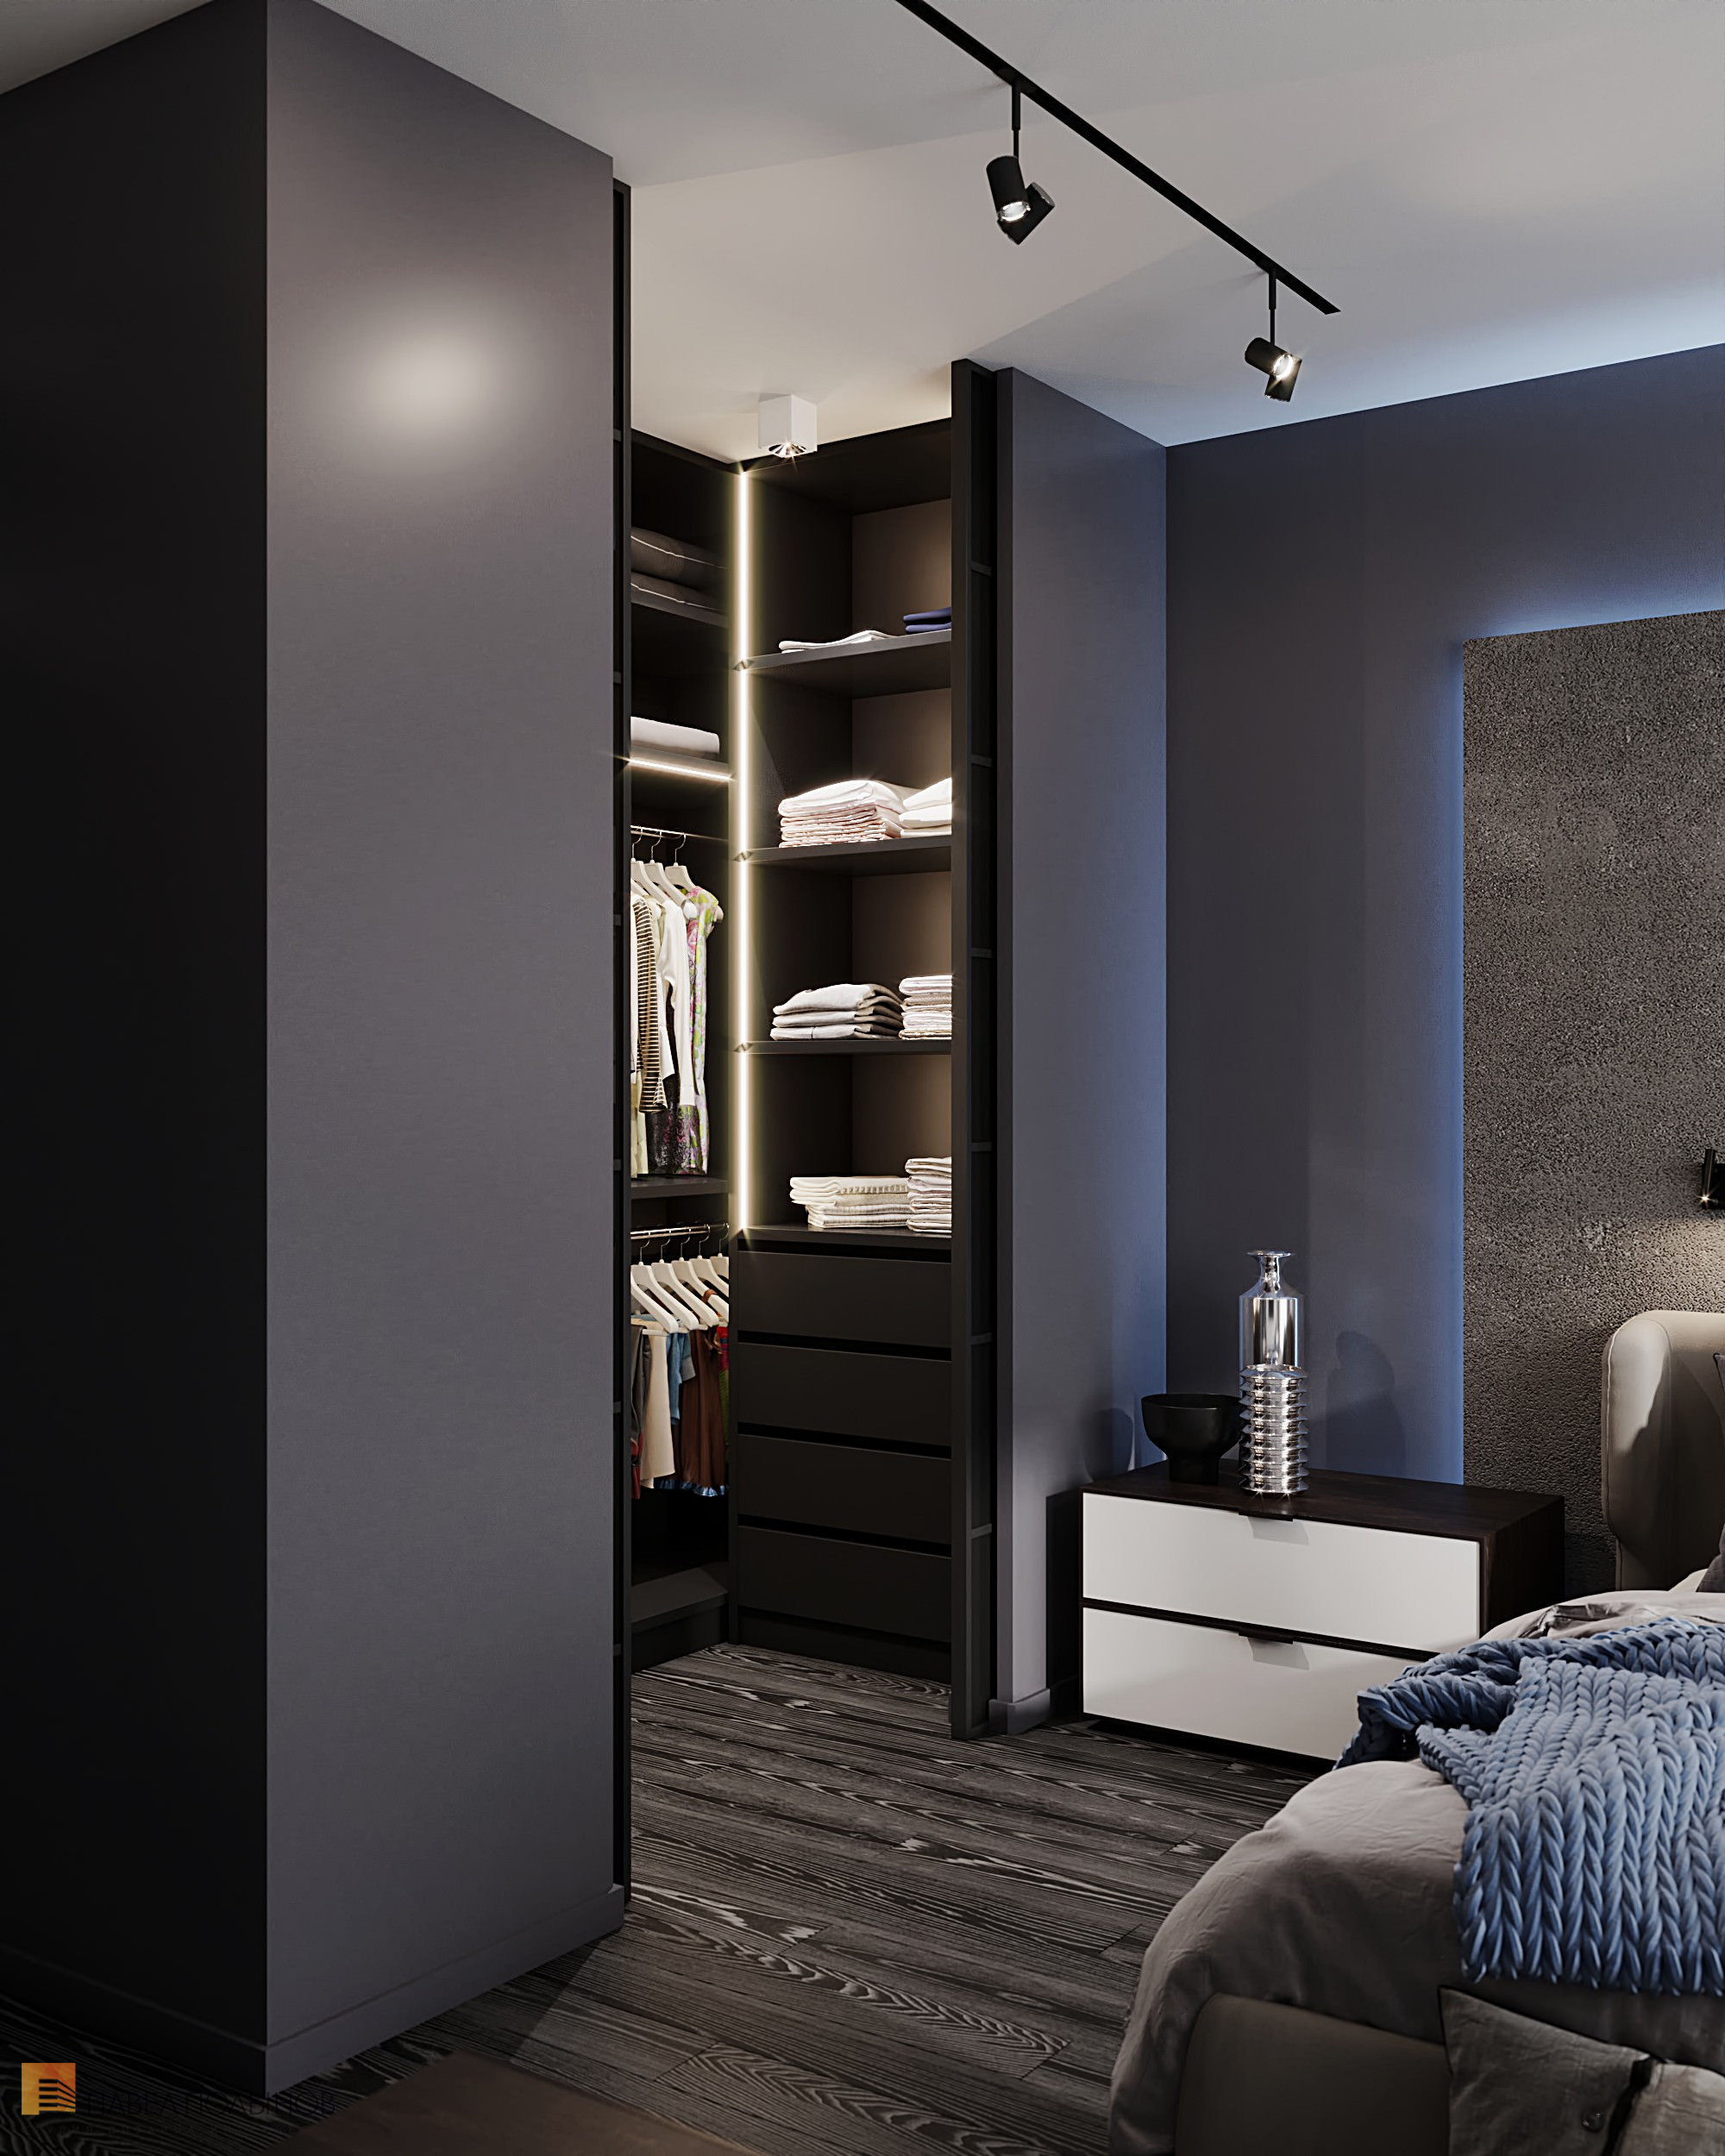 Фото дизайн спальни из проекта «Интерьер квартиры в современном стиле, ЖК «Остров», 90 кв.м.»